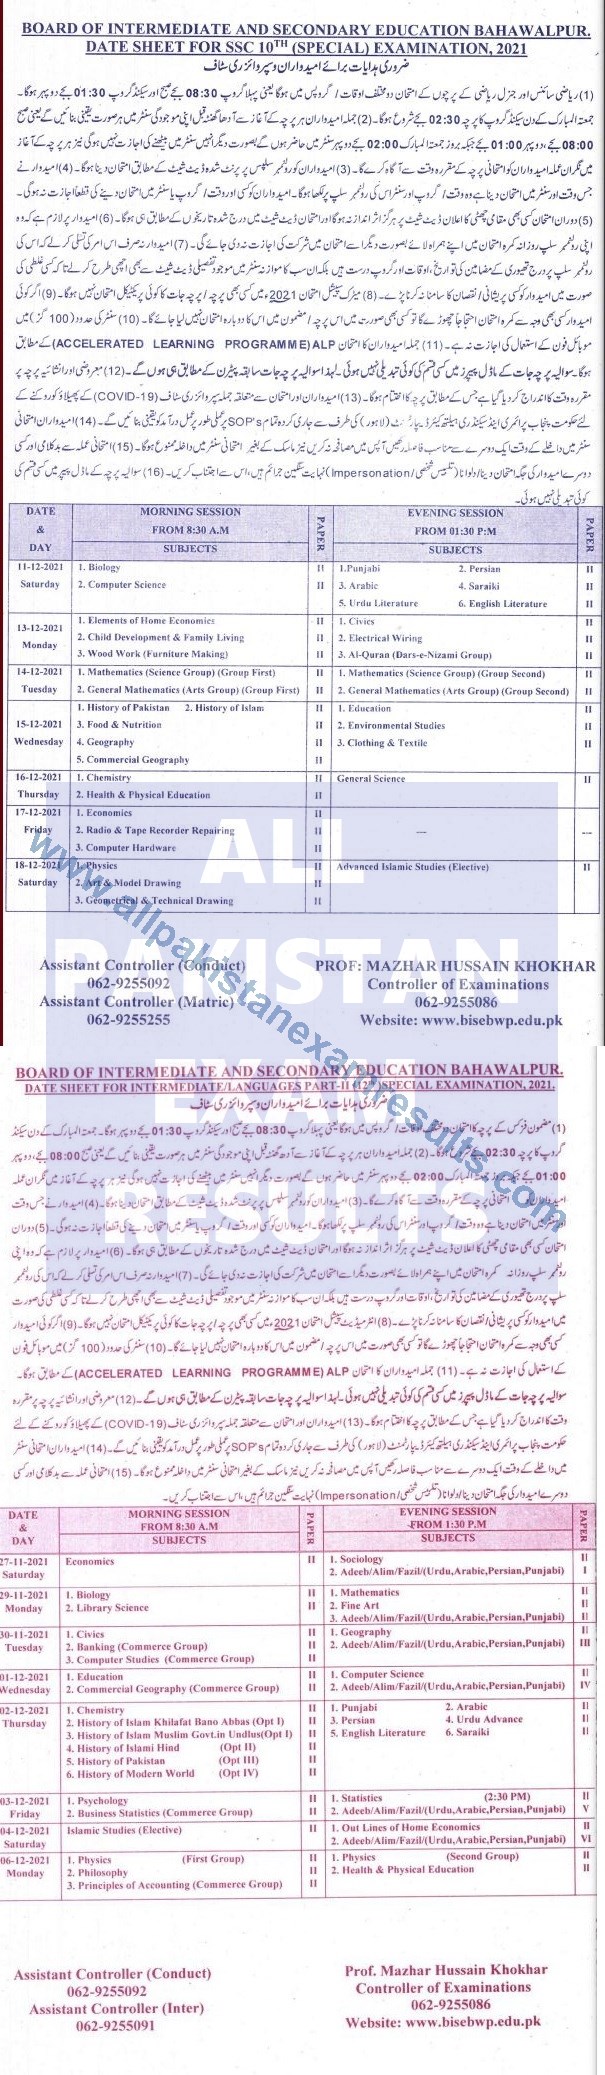 BISE Bahawalpur Date Sheet For HSSC & SSC Part 2 Special Exam 2021